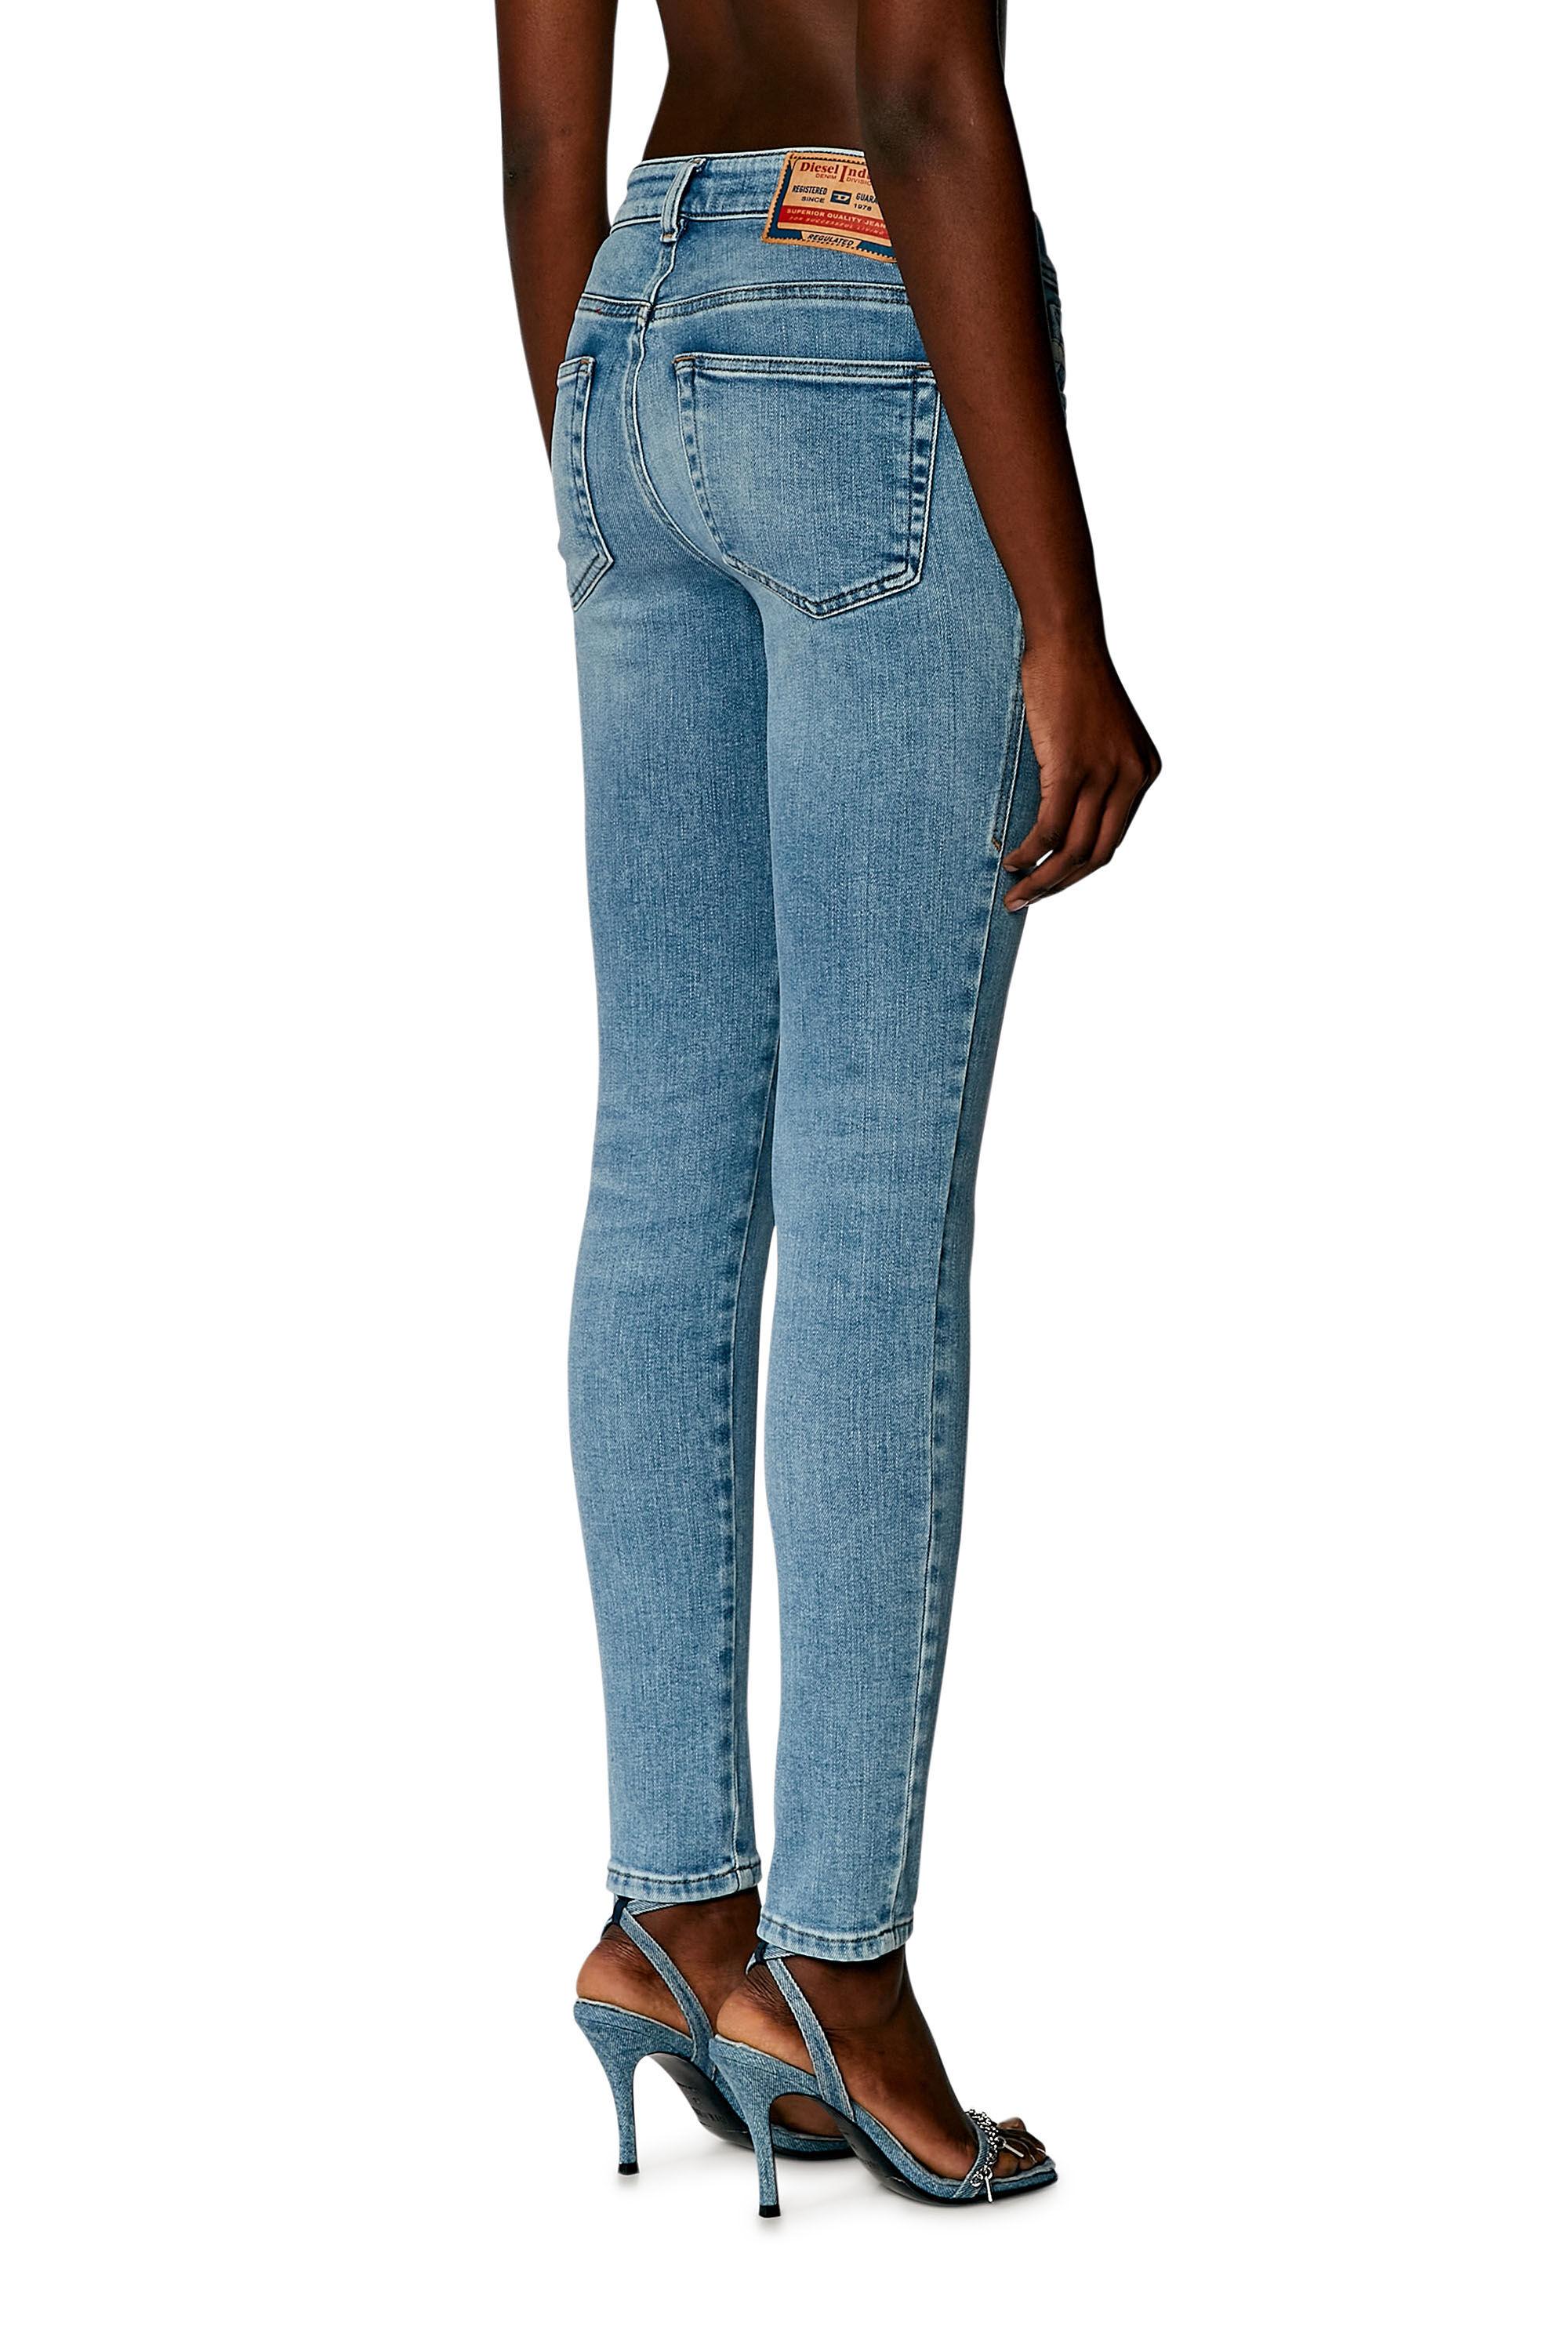 Women's Super skinny Jeans | Light blue | Diesel 2017 Slandy